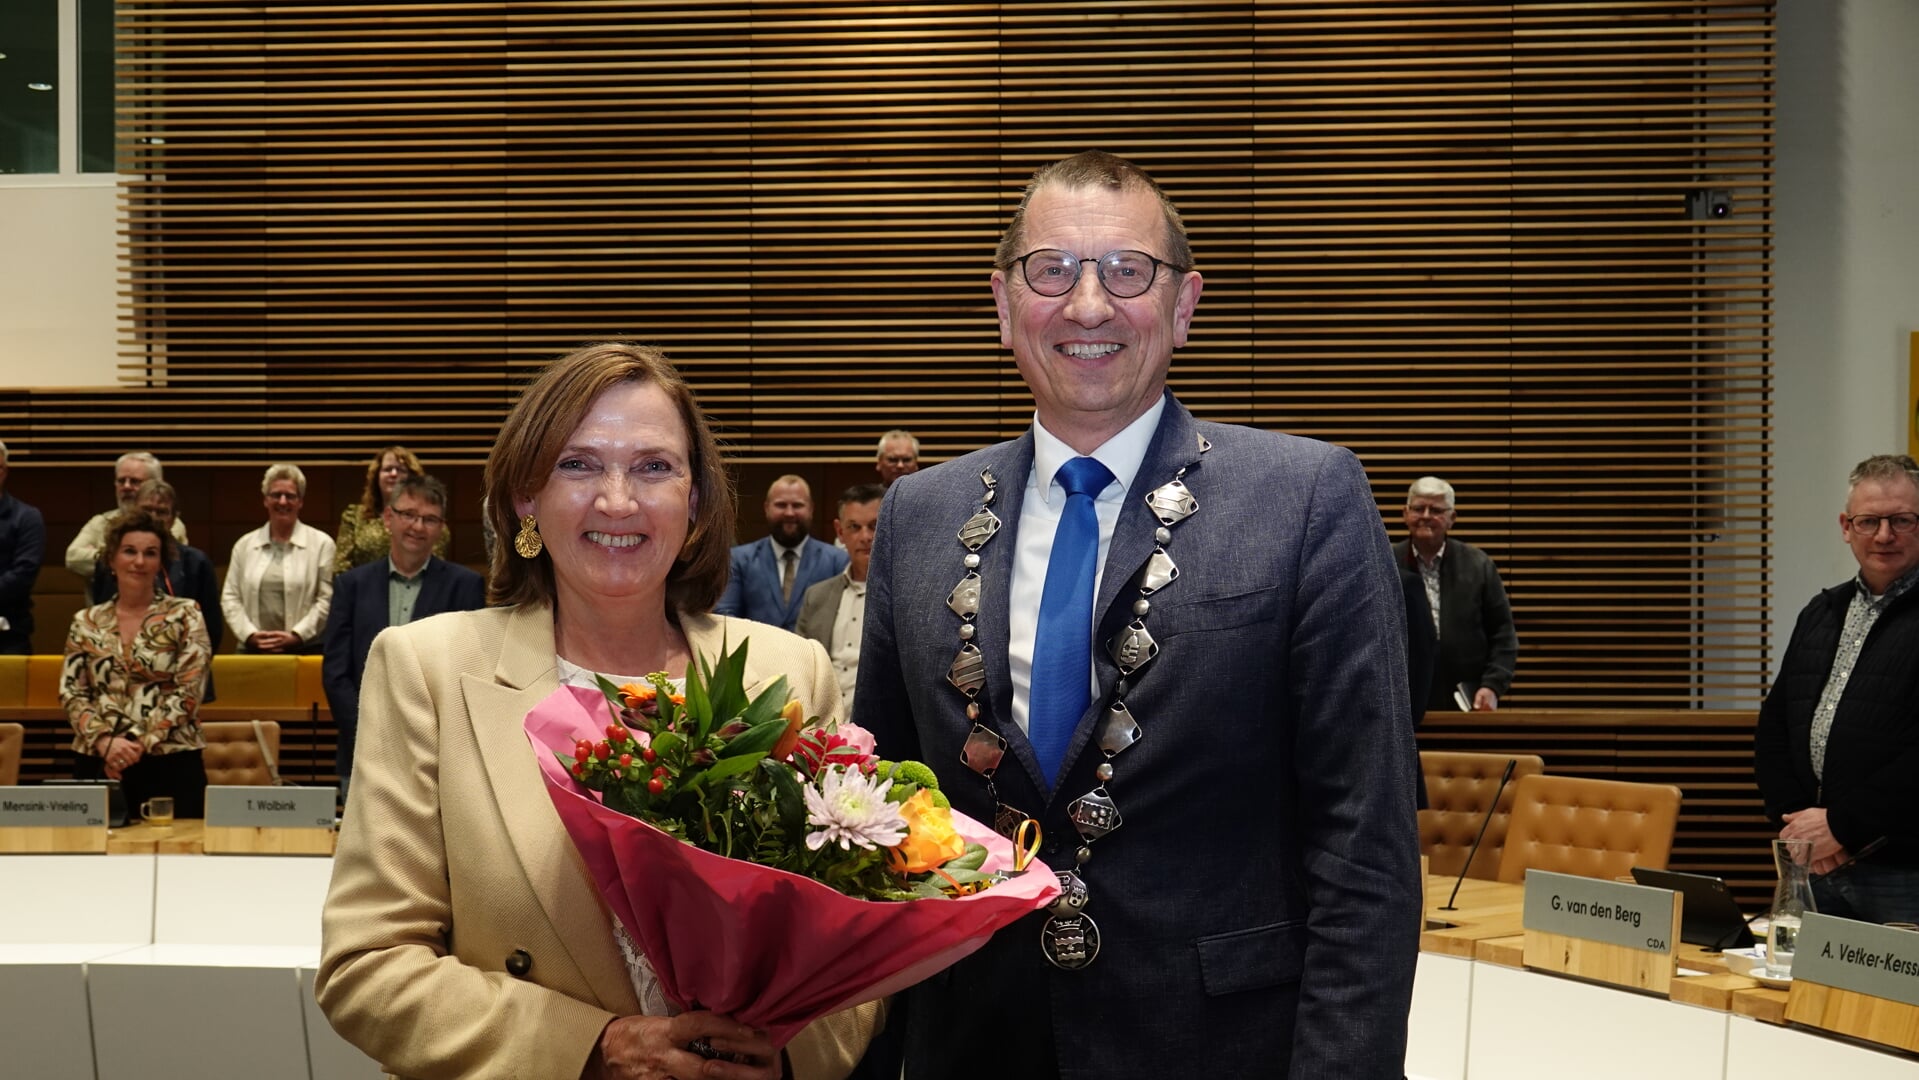 De 59-jarige Didi Dorrestijn-Taal uit Renswoude werd na unanieme goedkeuring van de raad, door burgemeester Offinga beëdigd als nieuwe wethouder van de gemeente Hardenberg. (Foto: G. Stegeman).  